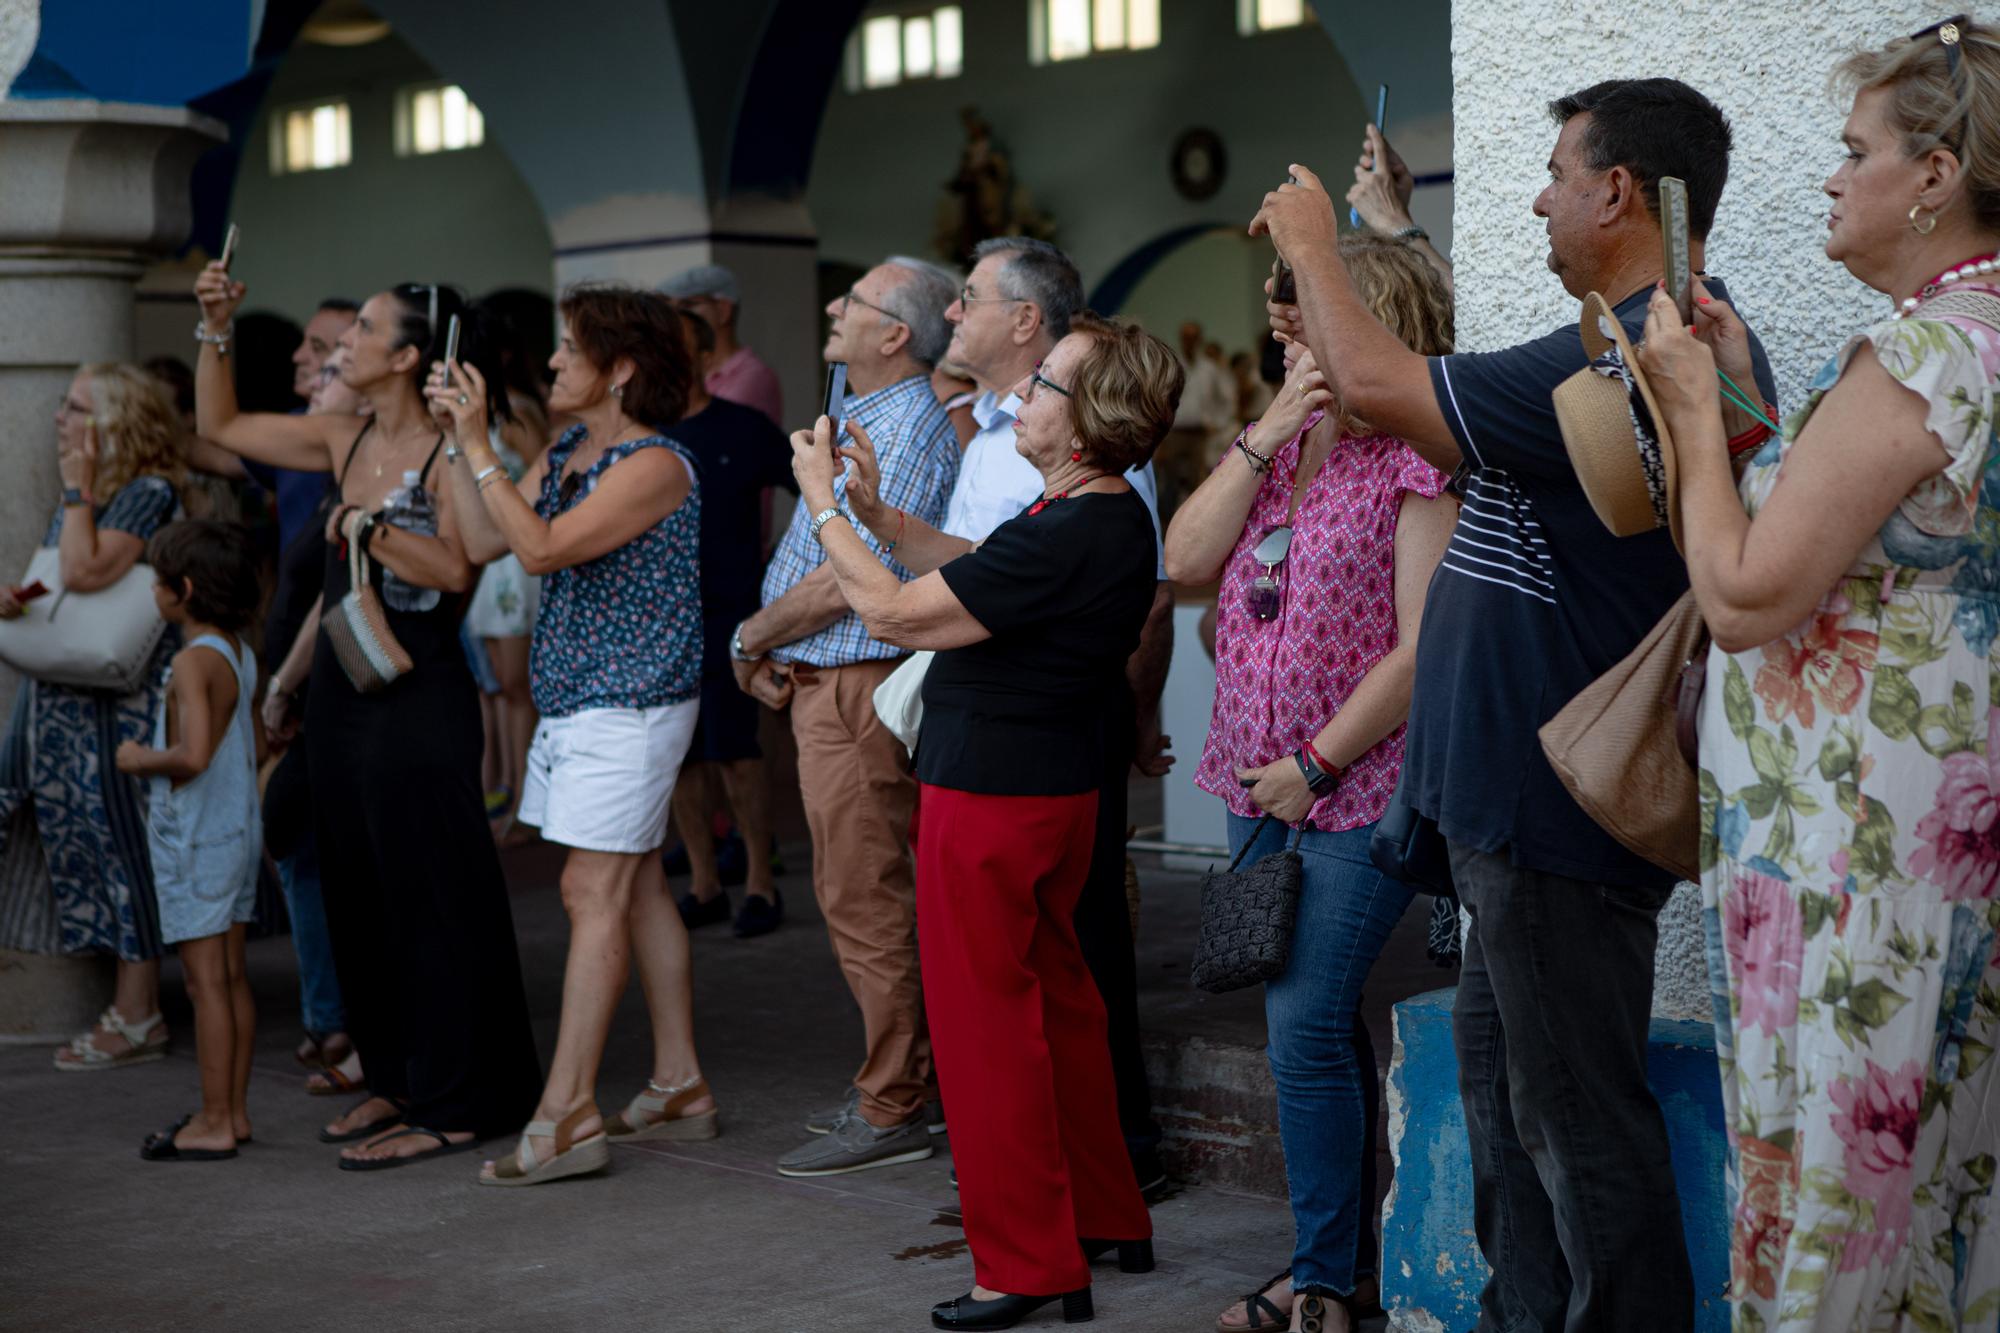 Procesión marítima de la Virgen del Carmen en Cartagena